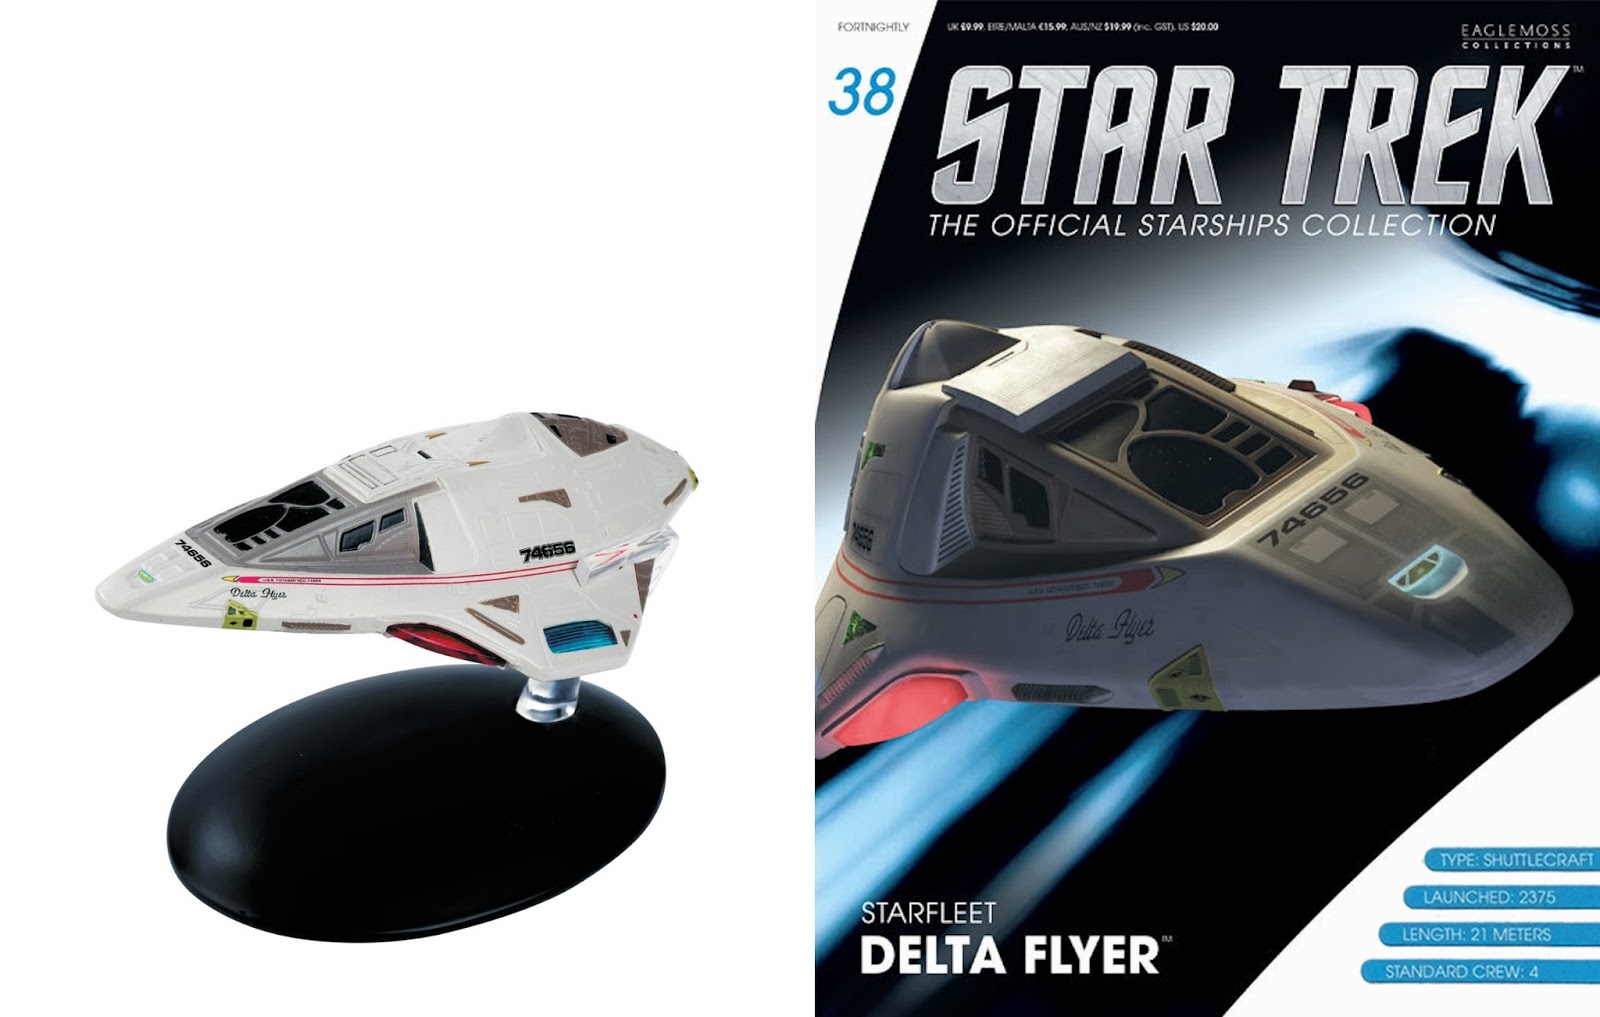 Star Trek Starships Voyager DELTA FLYER Shuttle Model Box Edition Eaglemoss #18 